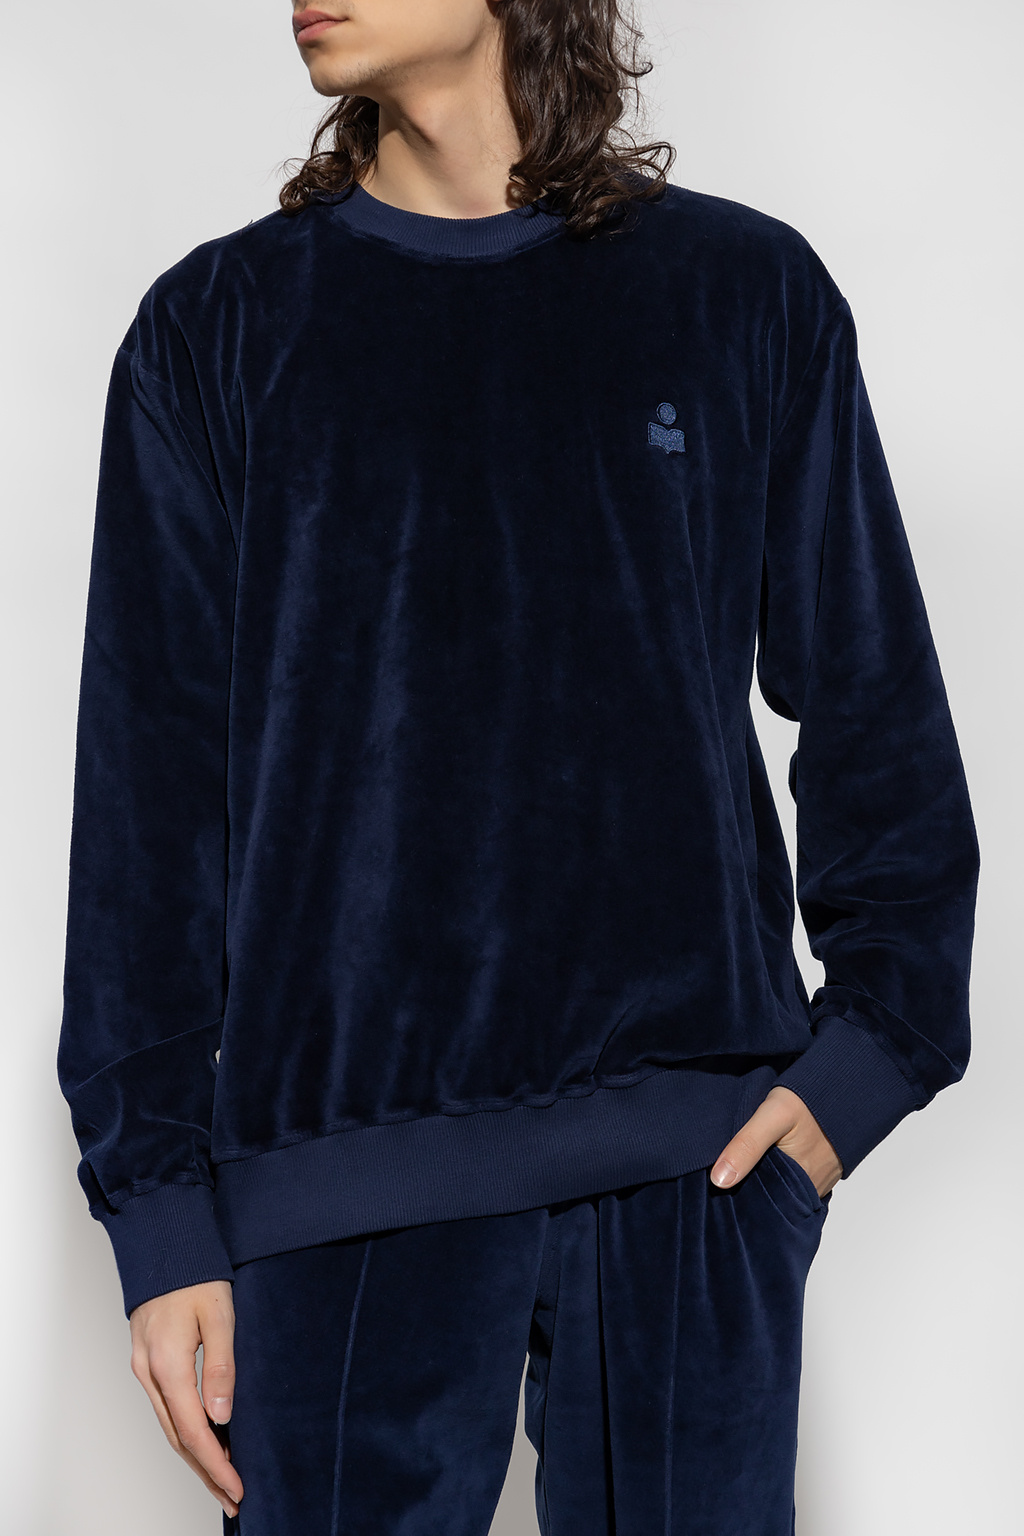 Isabel Marant ‘Maximh’ velvet sweatshirt